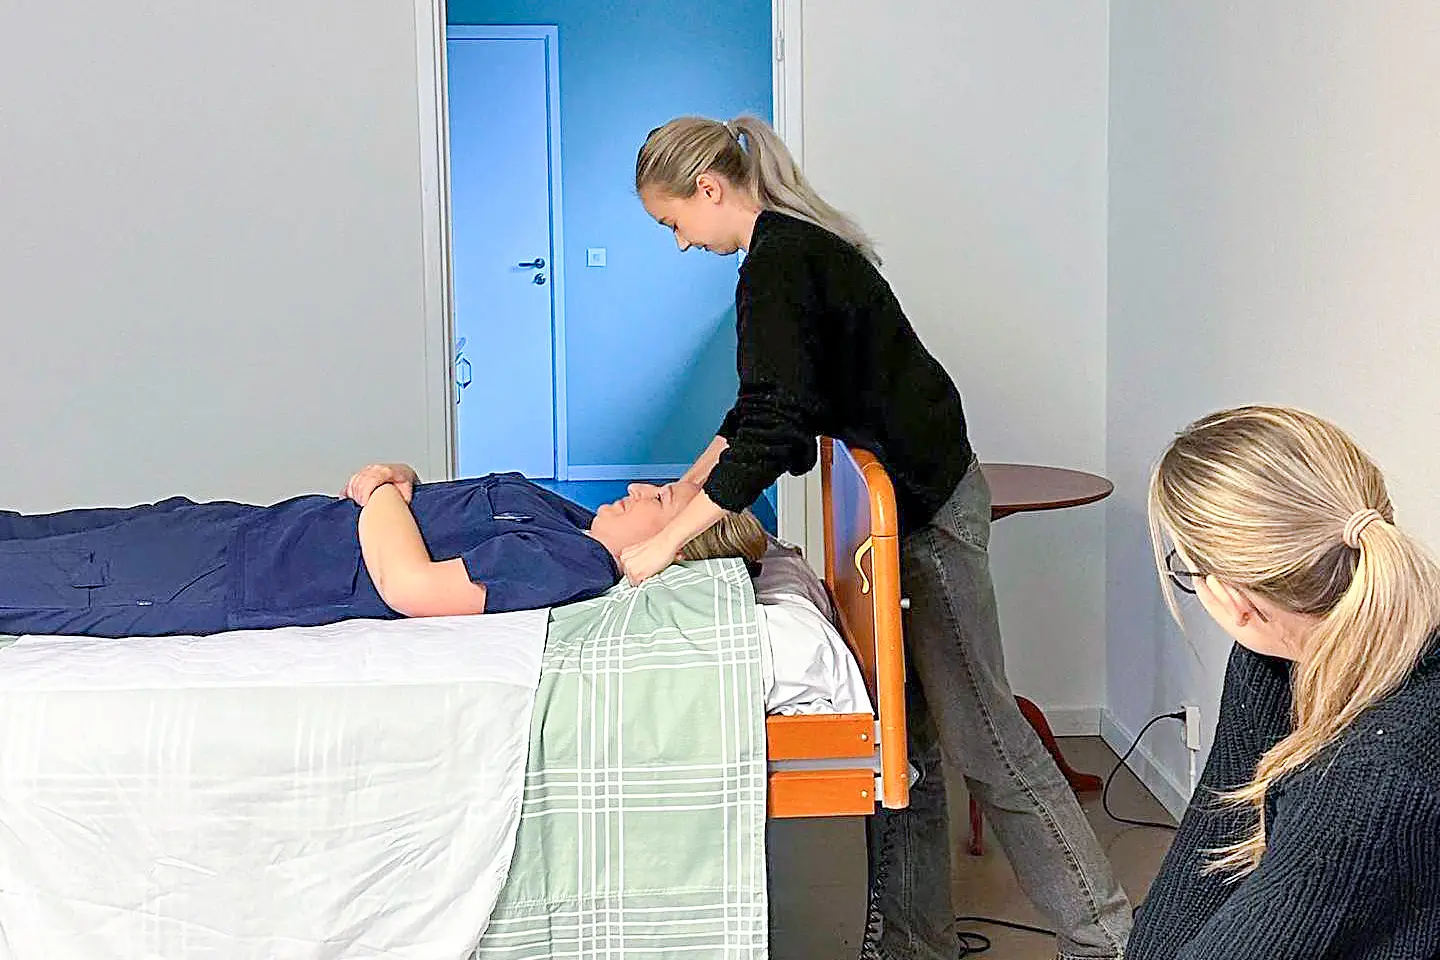 Utbildning i klinisk introduktion där en instruktör visar en övning på en person som ligger i sängen.